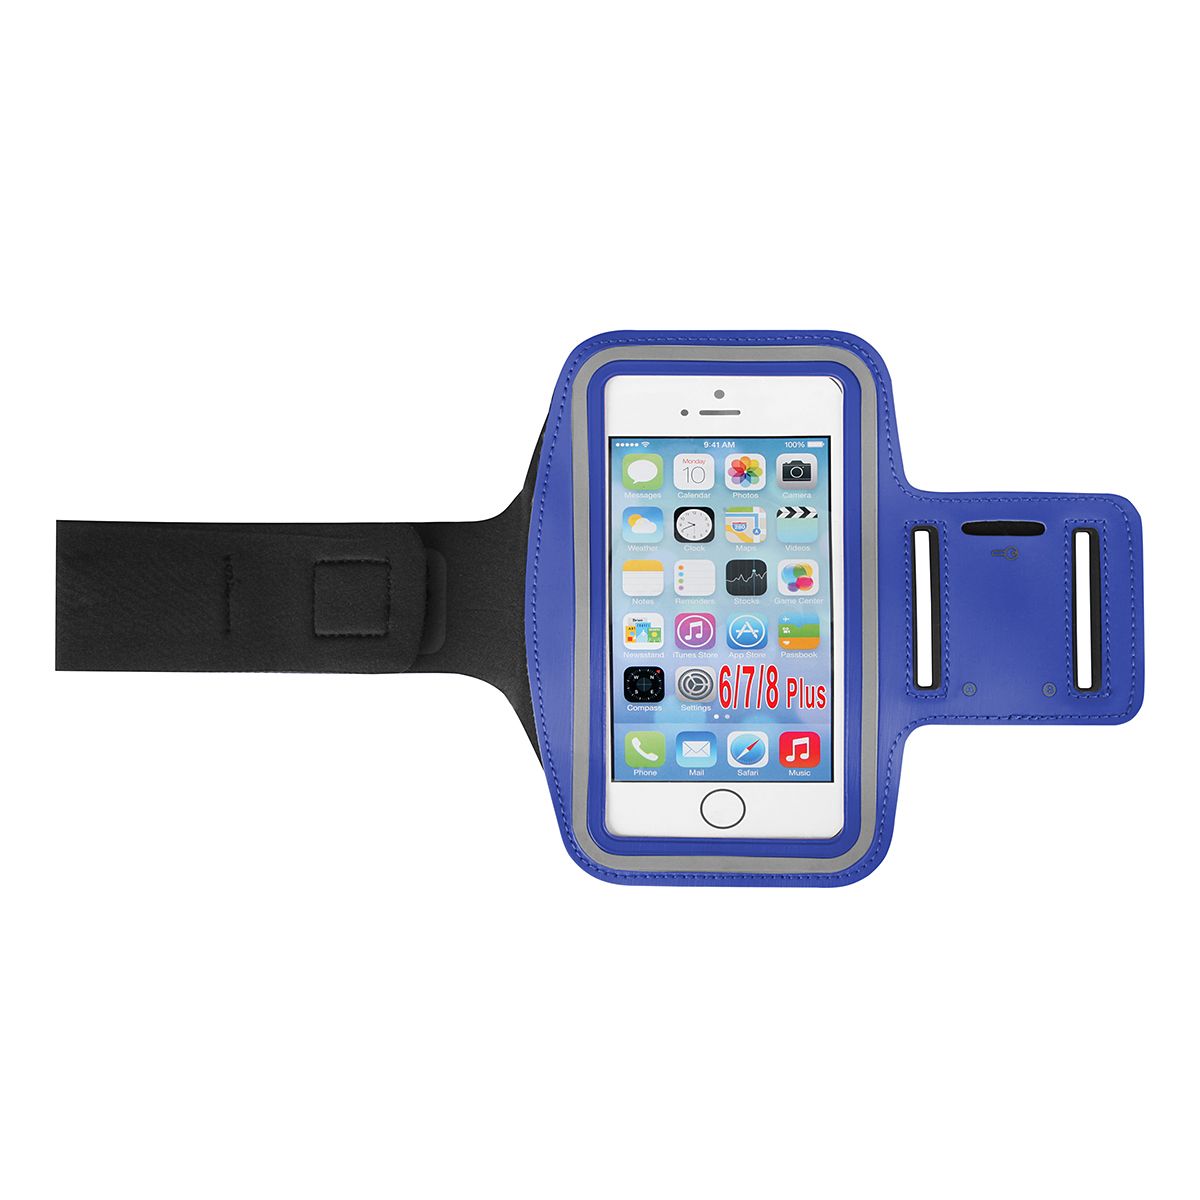 Pouzdro Arm Band 5.5” - sportovní - modré Global technology